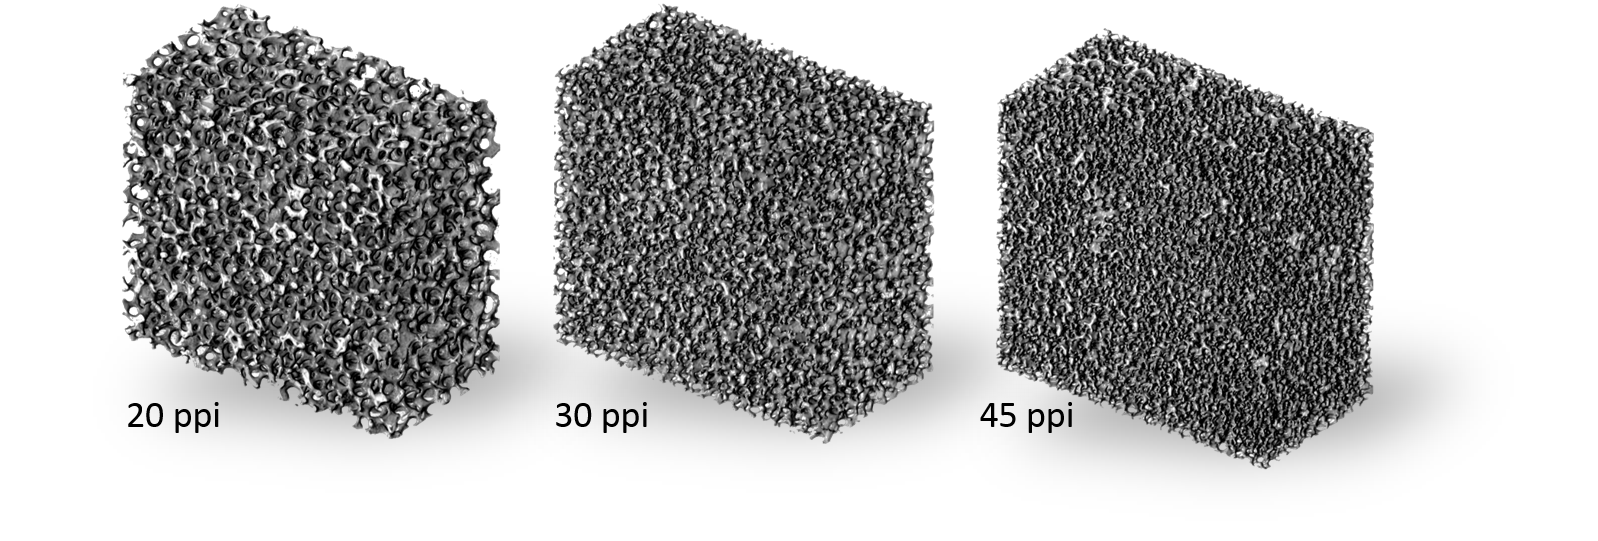 Mikro CT Bilder der verwendeten Schäume mit Porendichten von 20 ppi, 30 ppi und 45 ppi